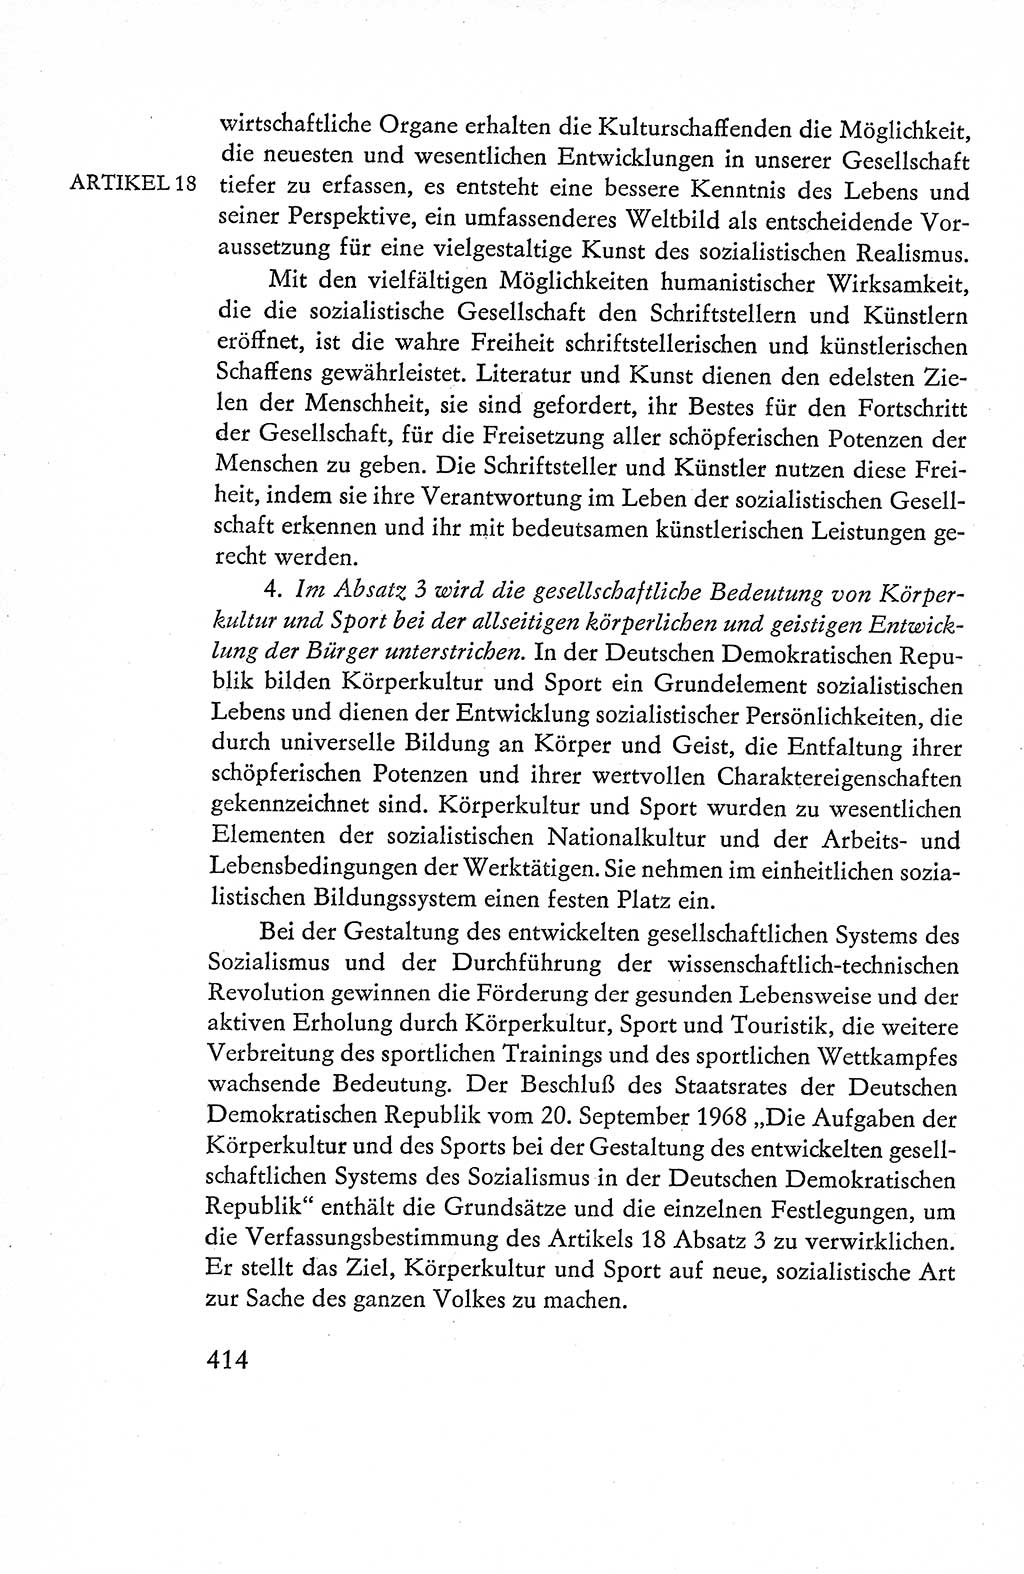 Verfassung der Deutschen Demokratischen Republik (DDR), Dokumente, Kommentar 1969, Band 1, Seite 414 (Verf. DDR Dok. Komm. 1969, Bd. 1, S. 414)